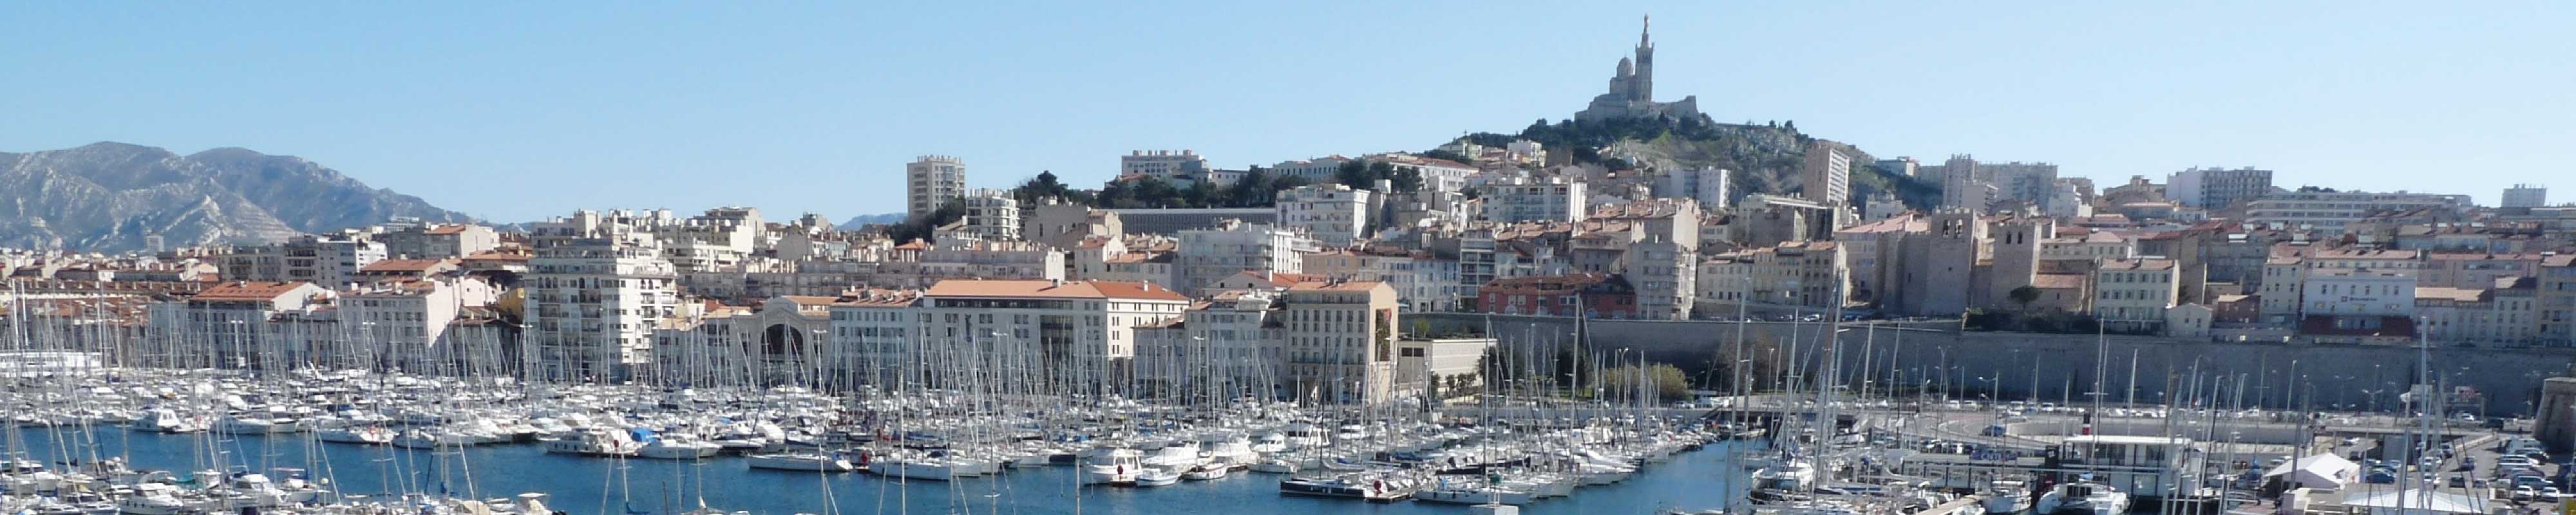 Gepäckaufbewahrung | Marseille - Nannybag